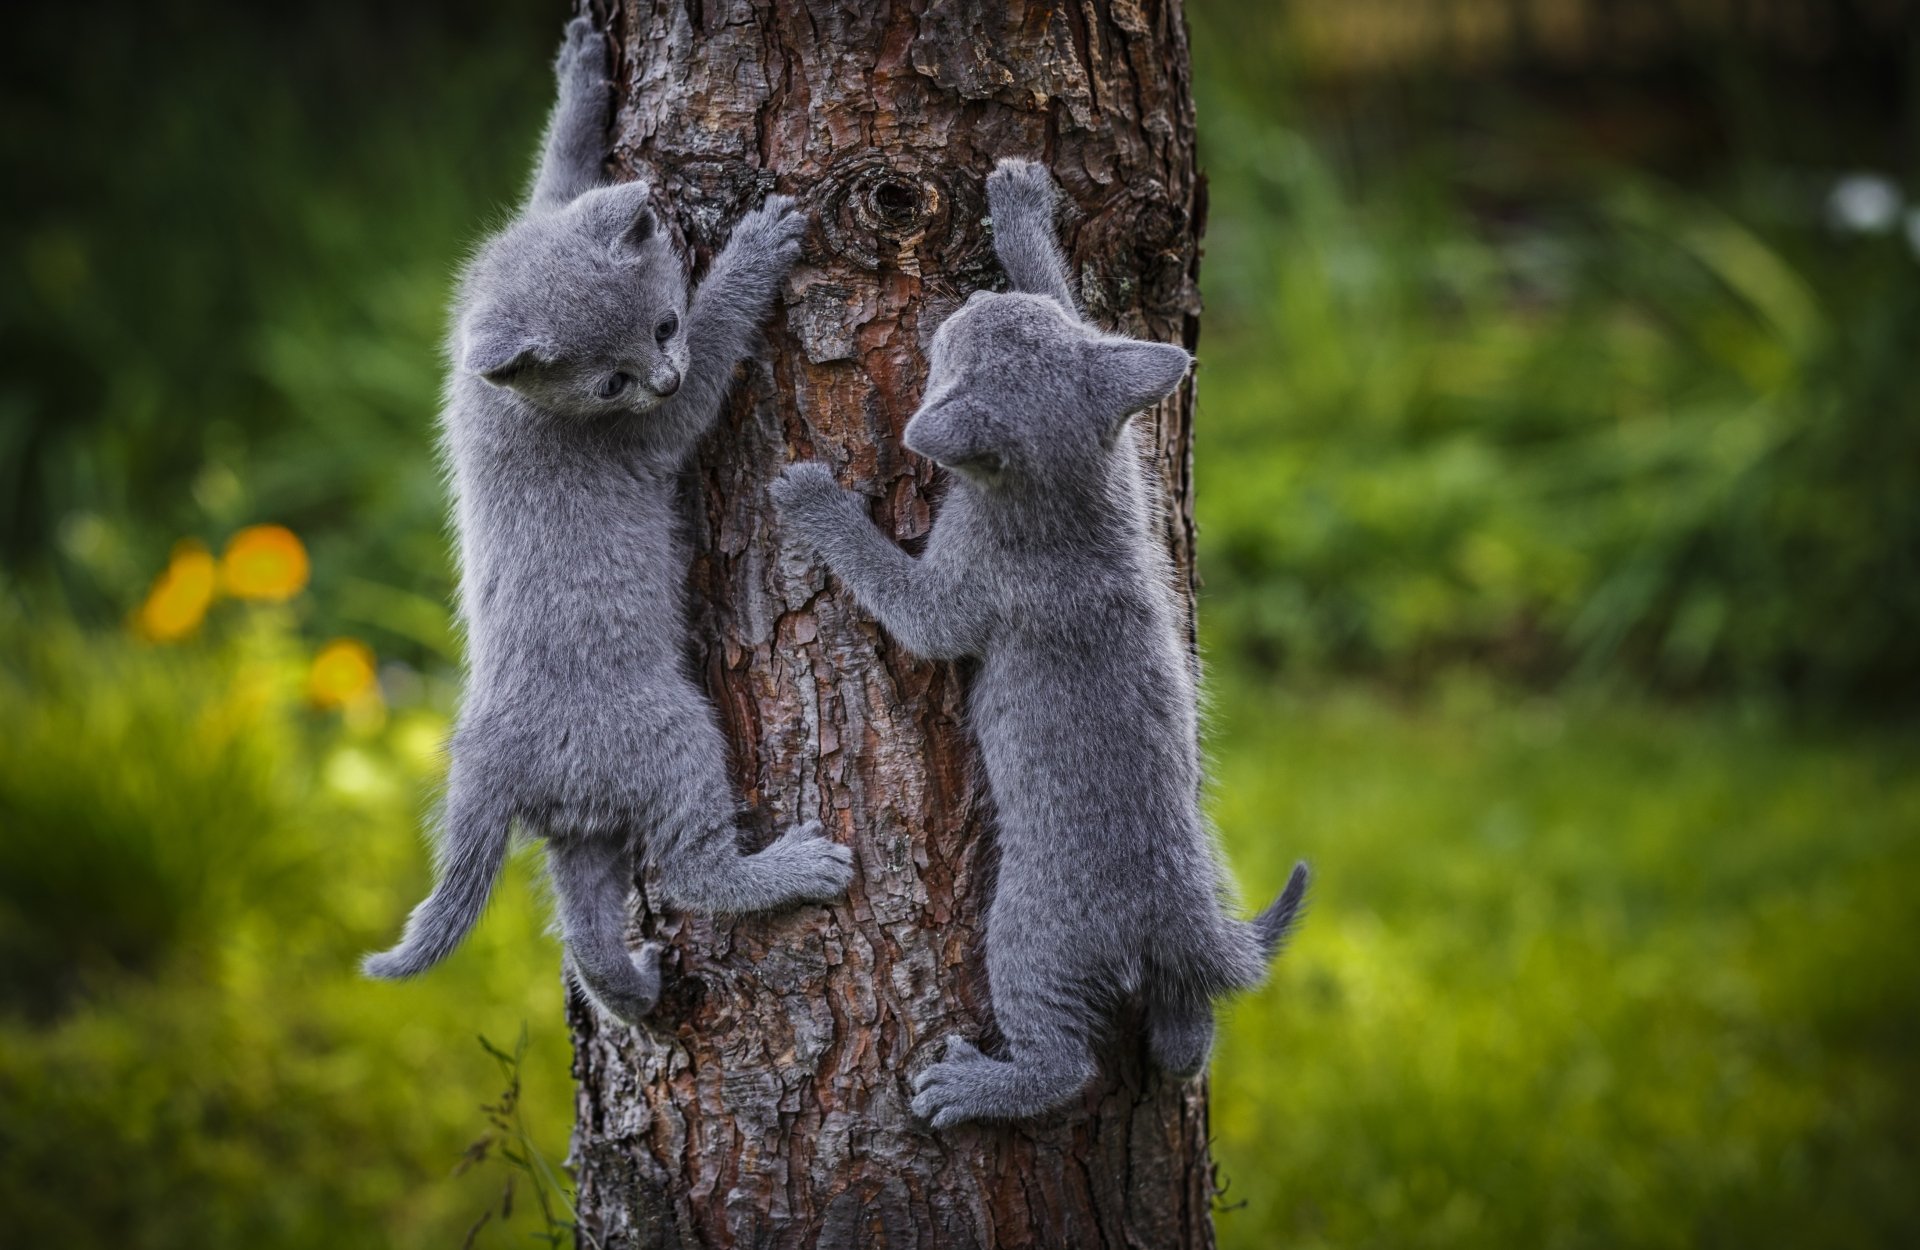 Cats climb the trees go carefully